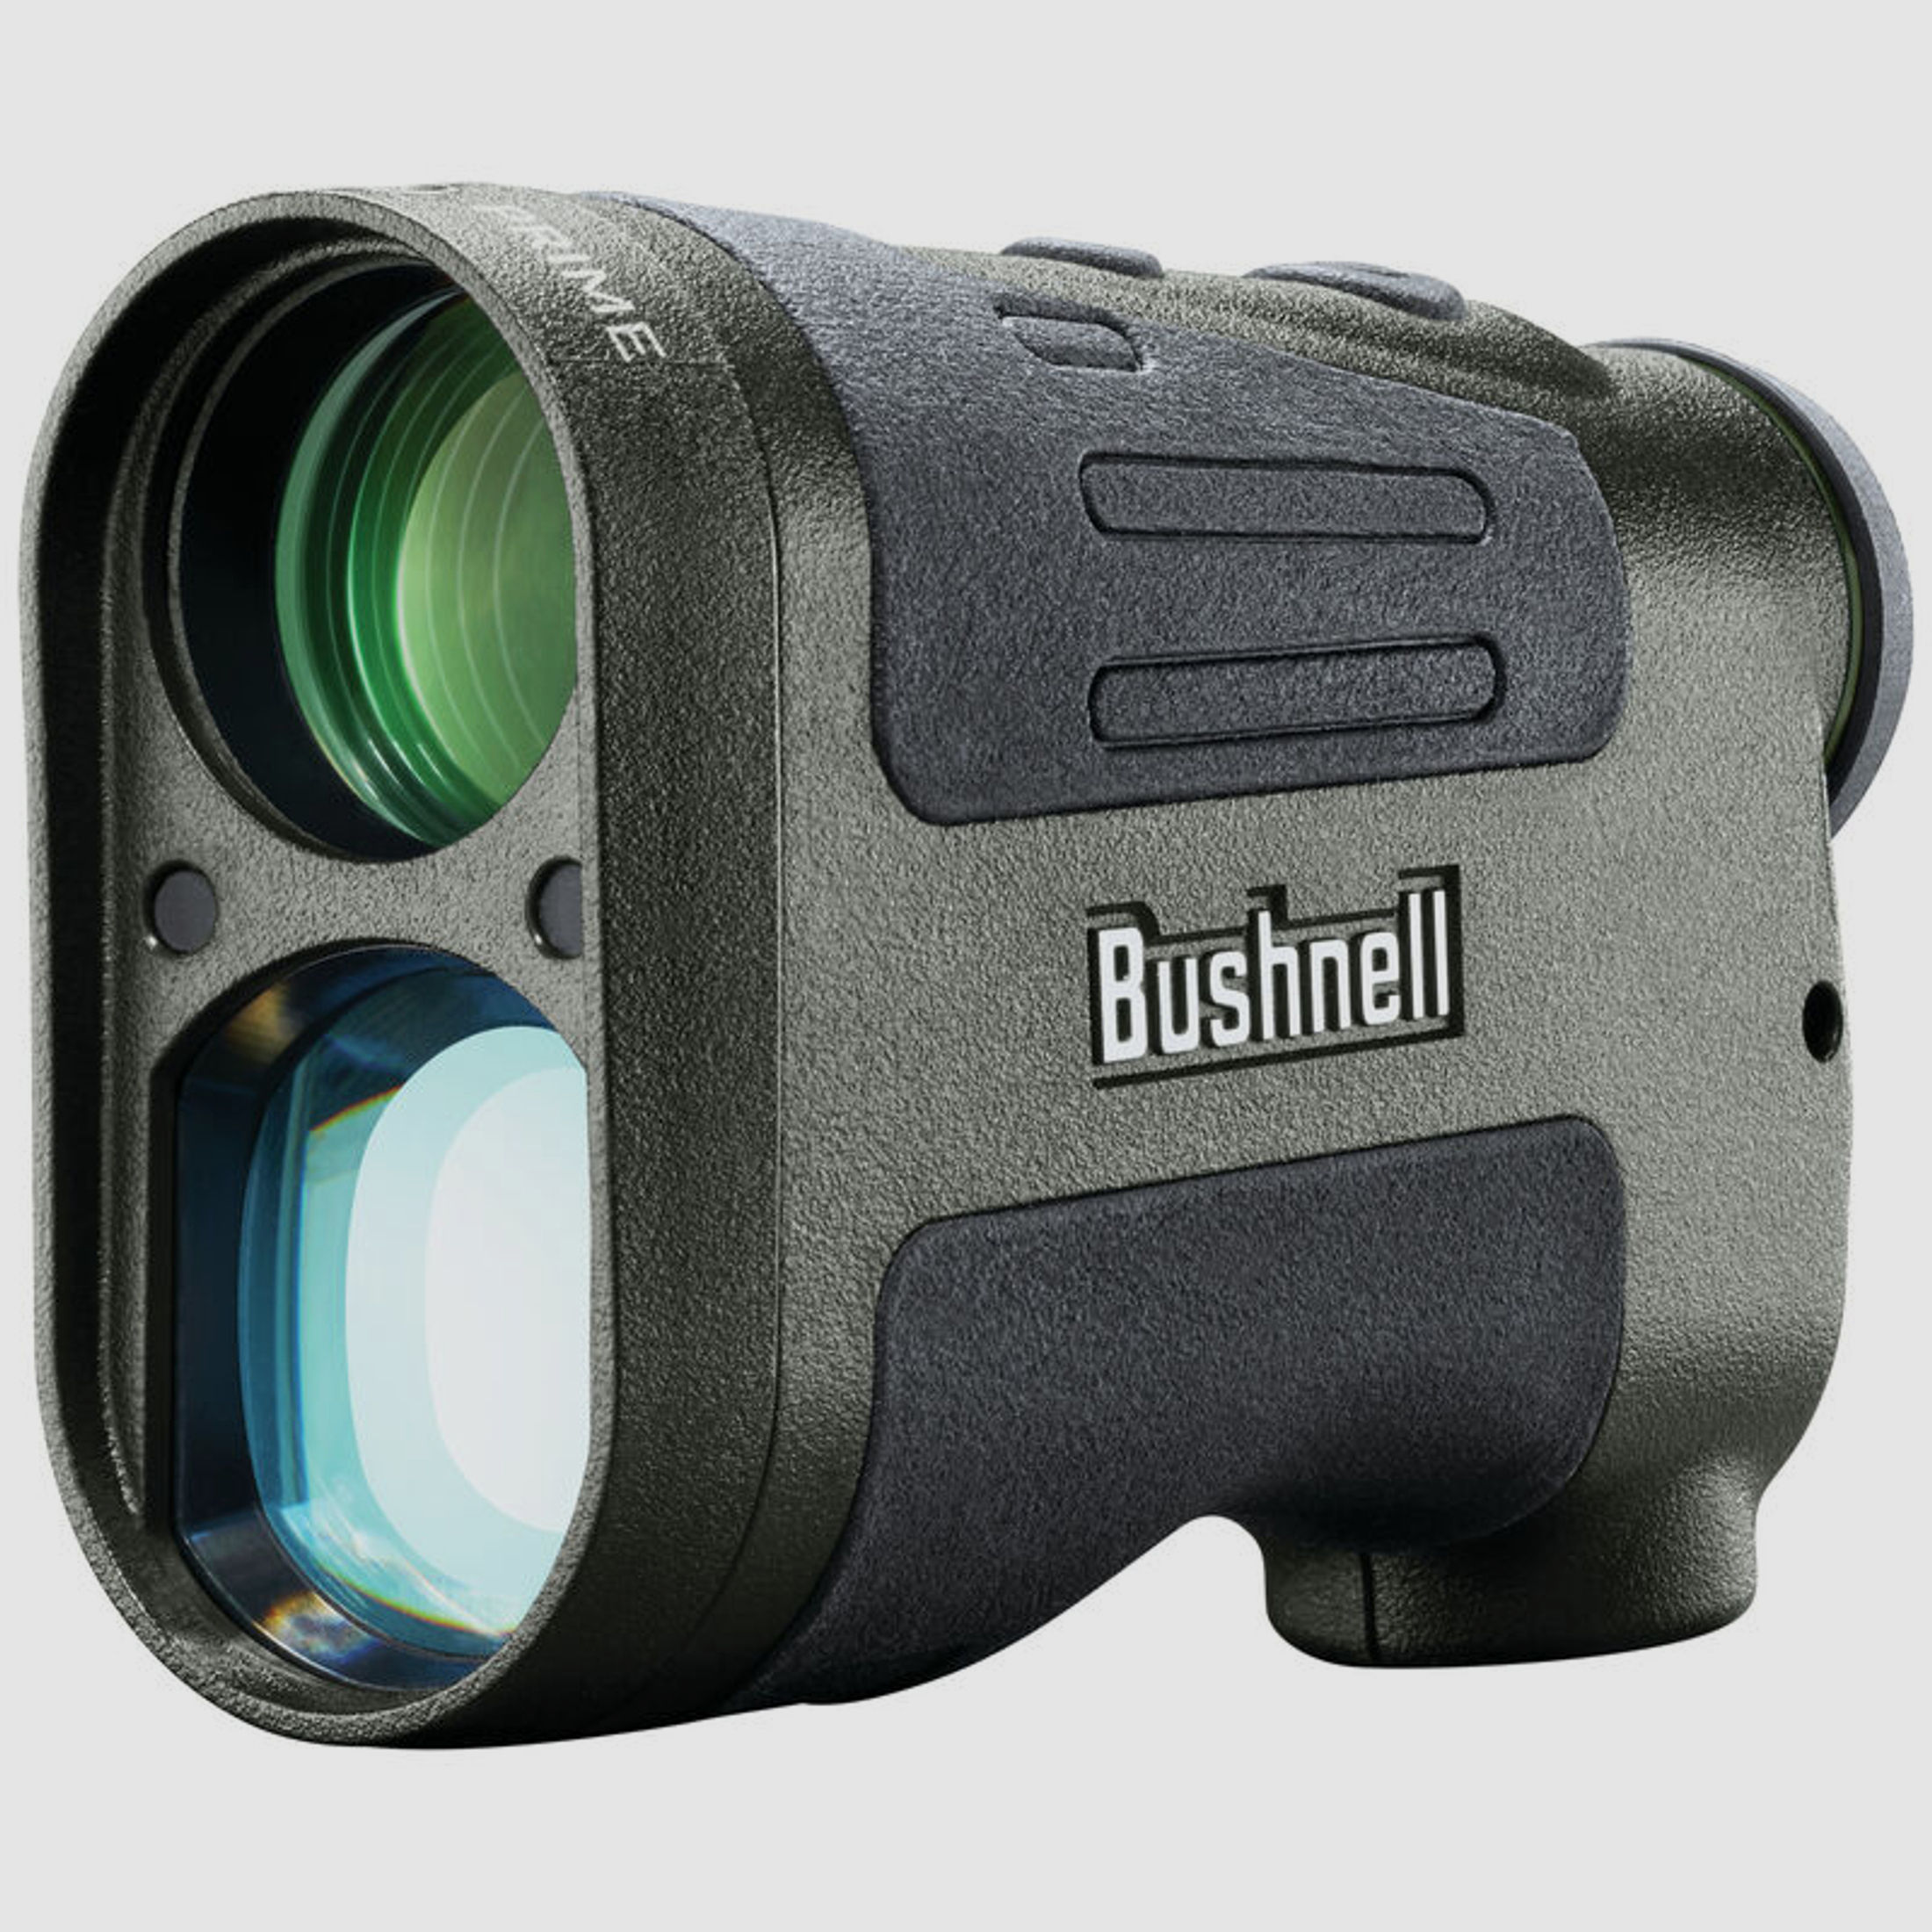 Bushnell Prime Combo Kit, Prime 10x42 Fernglas, Prime 1300 Laser Entfernungsmesser